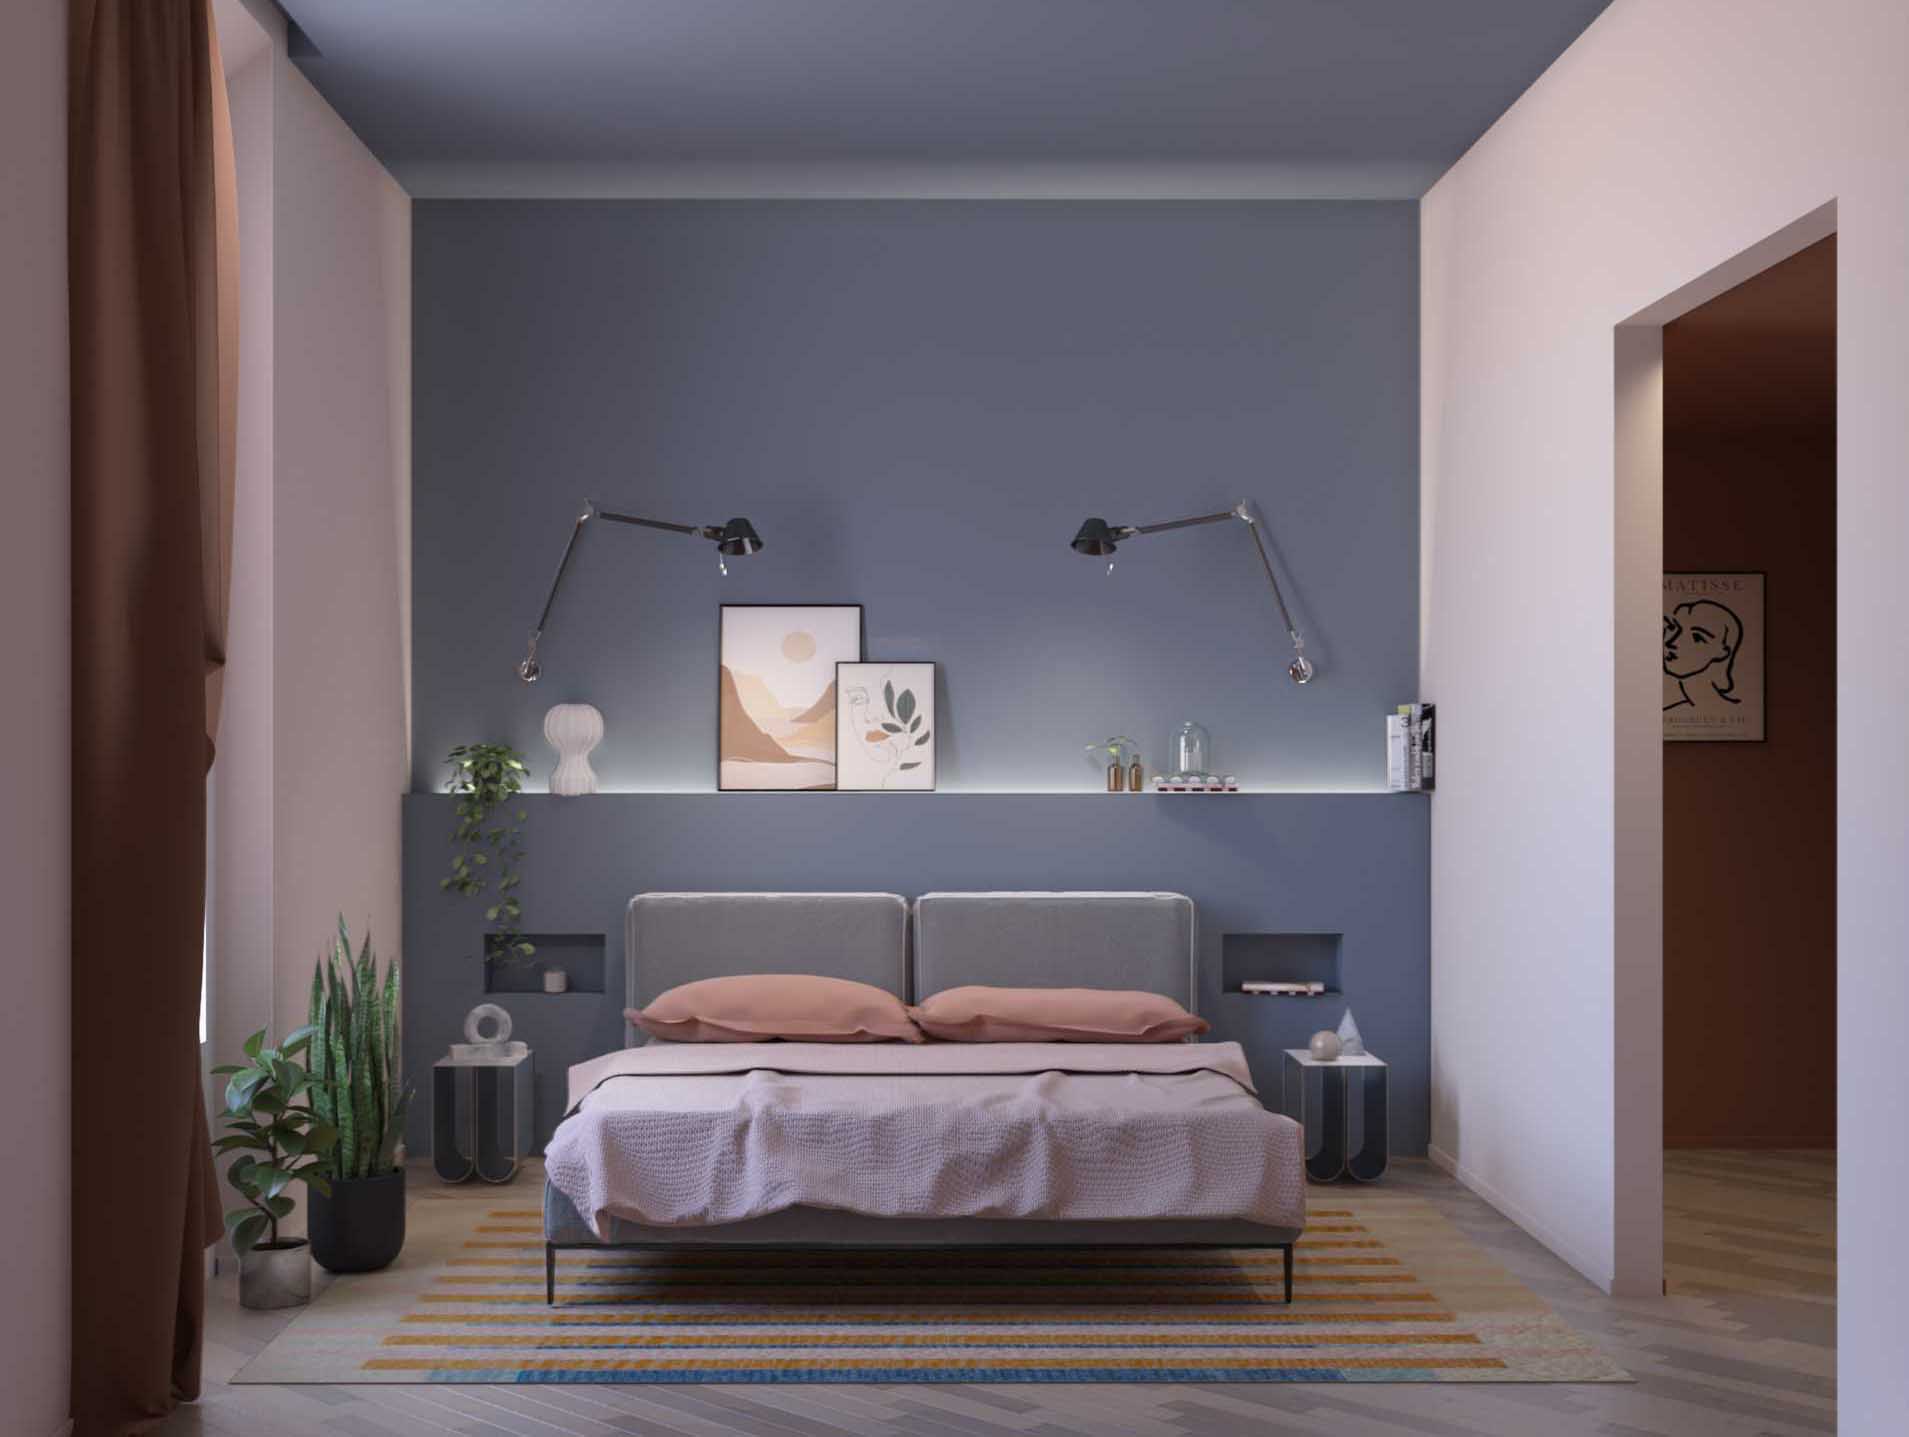 رندر یک اتاق خواب مدرن با یک دیوار ساخته شده که شامل دو میز کنار تخت است.